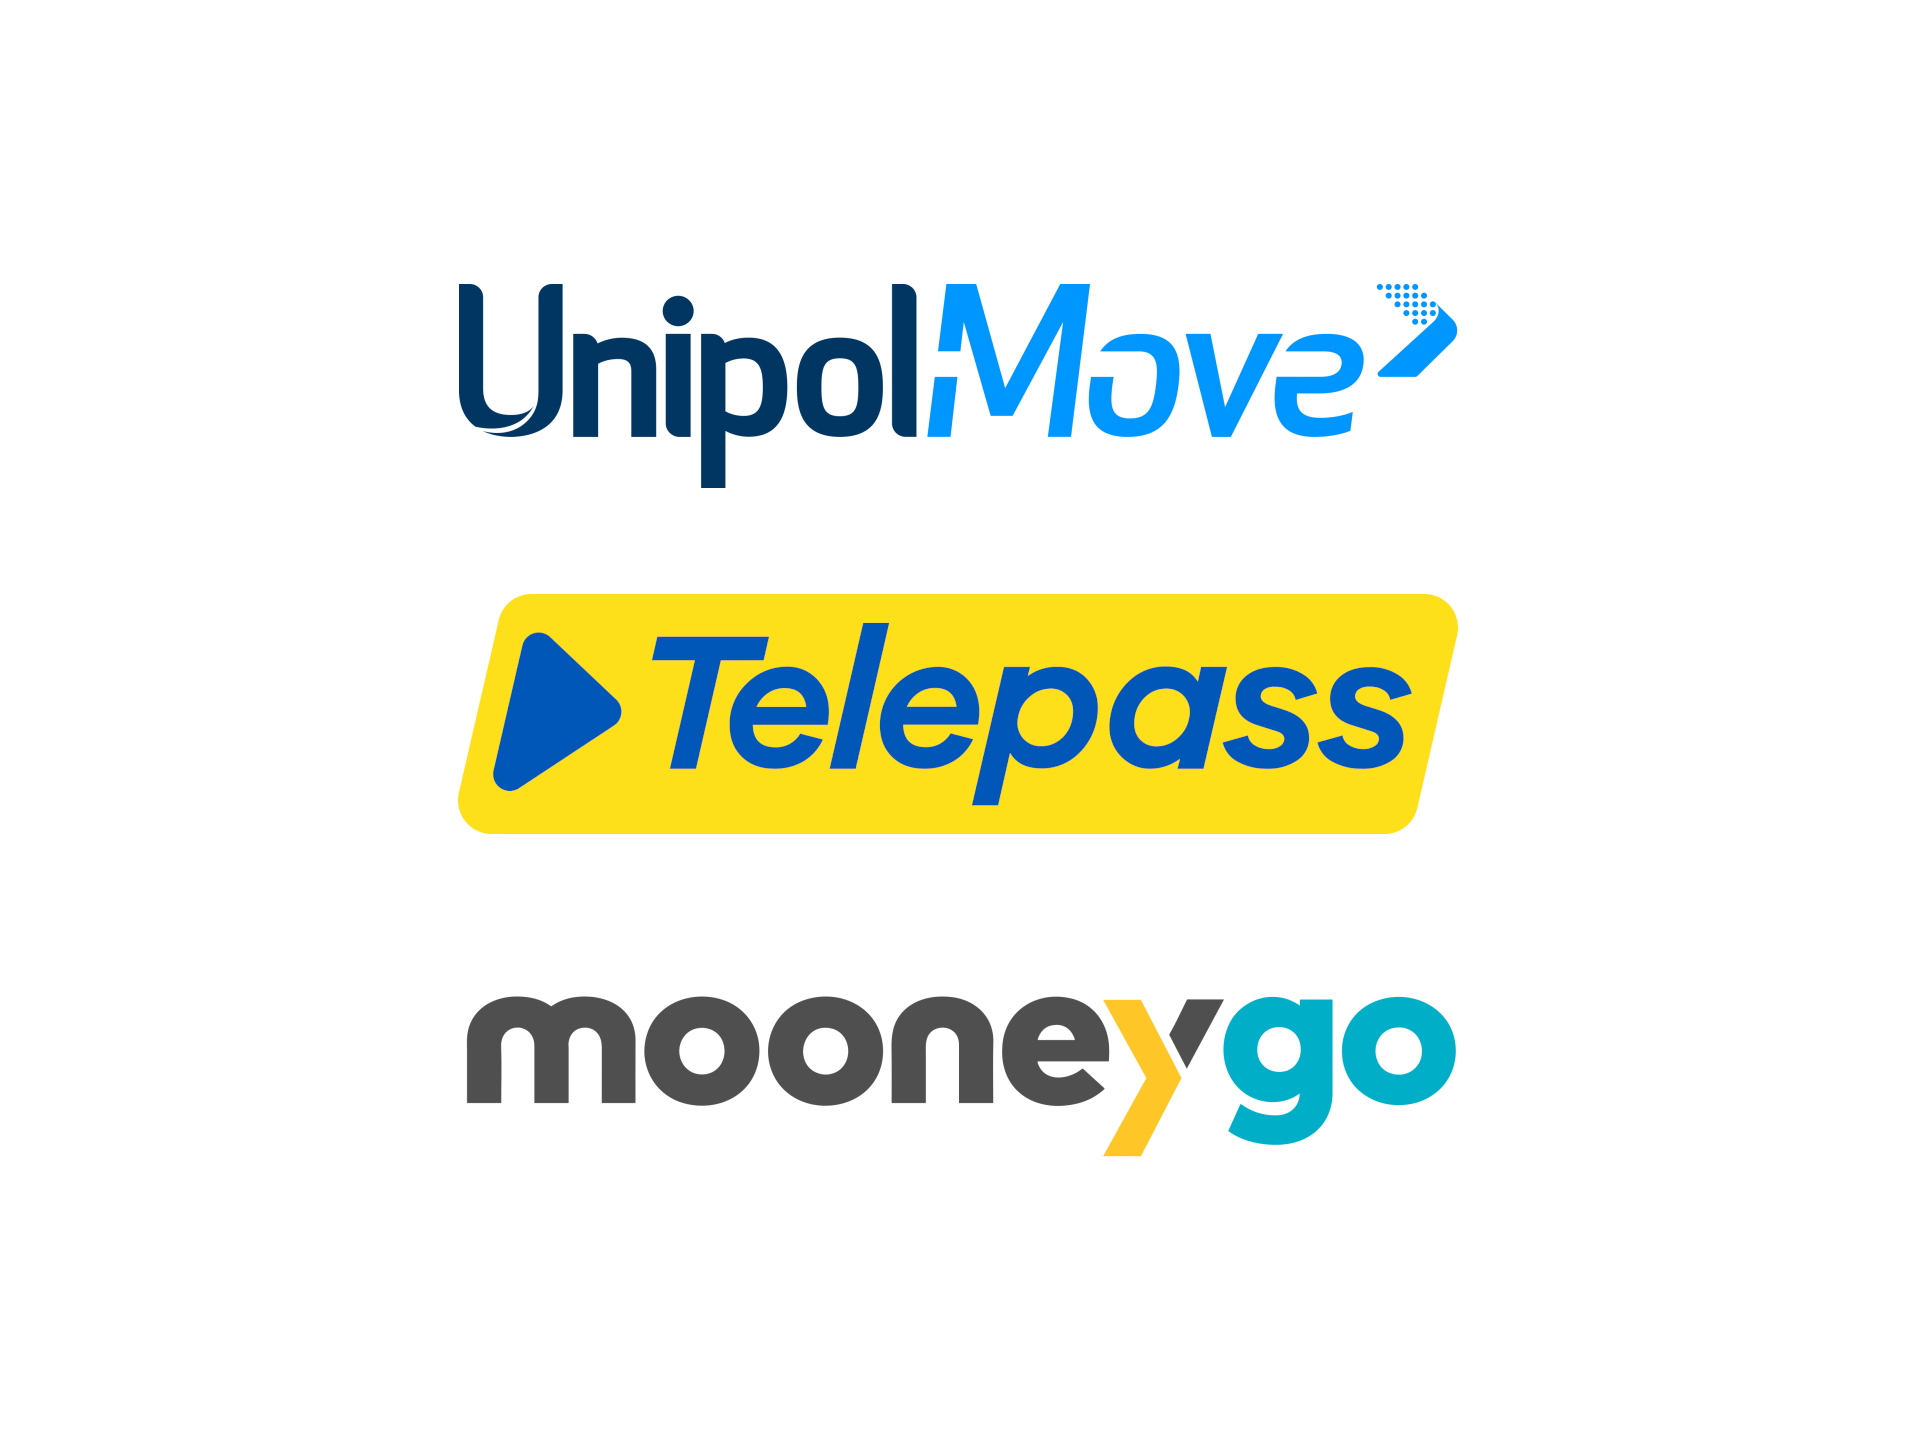 Telepass, UnipolMove e MooneyGo: un confronto tra le app per il telepedaggio (e non solo)